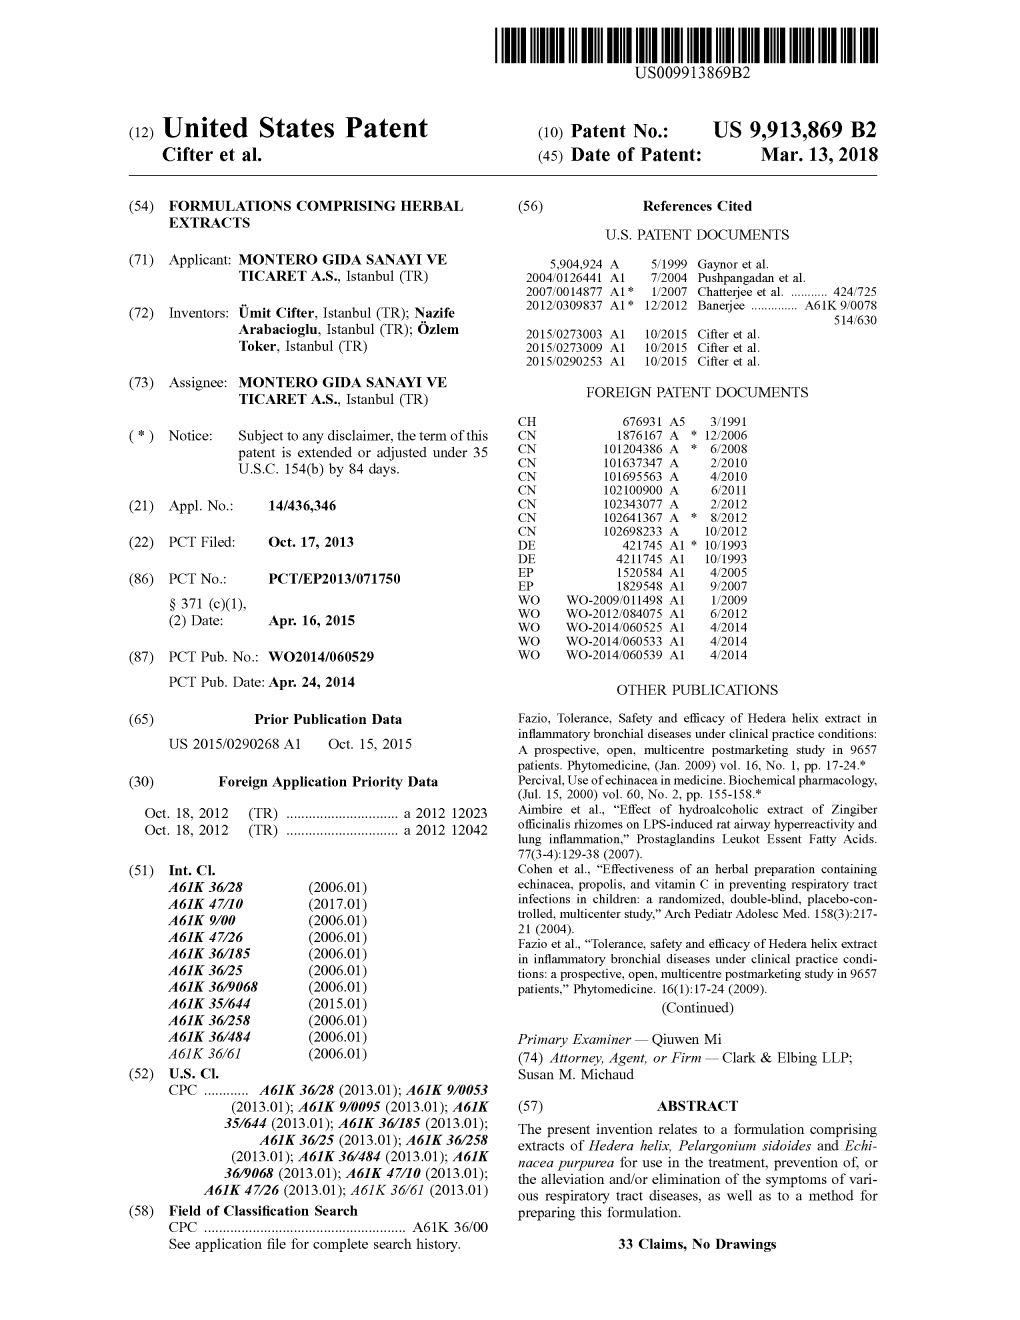 THIRUVUUTTUUNTURUS009913869B2 (12 ) United States Patent ( 10 ) Patent No